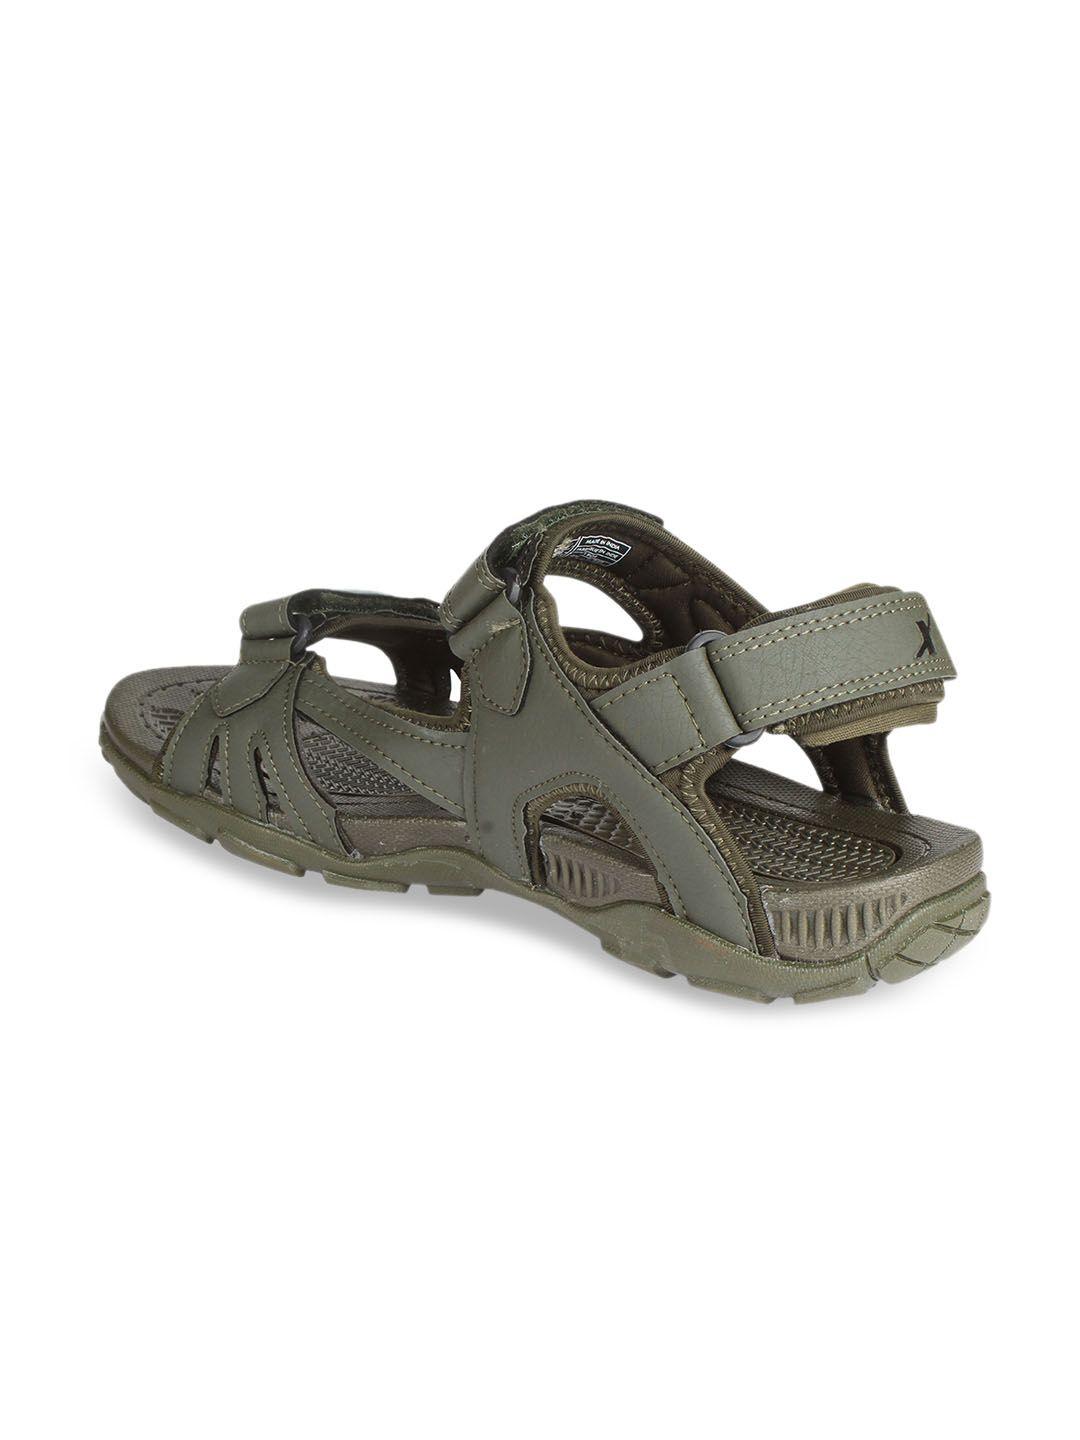 sparx-men-olive-green-sports-sandals